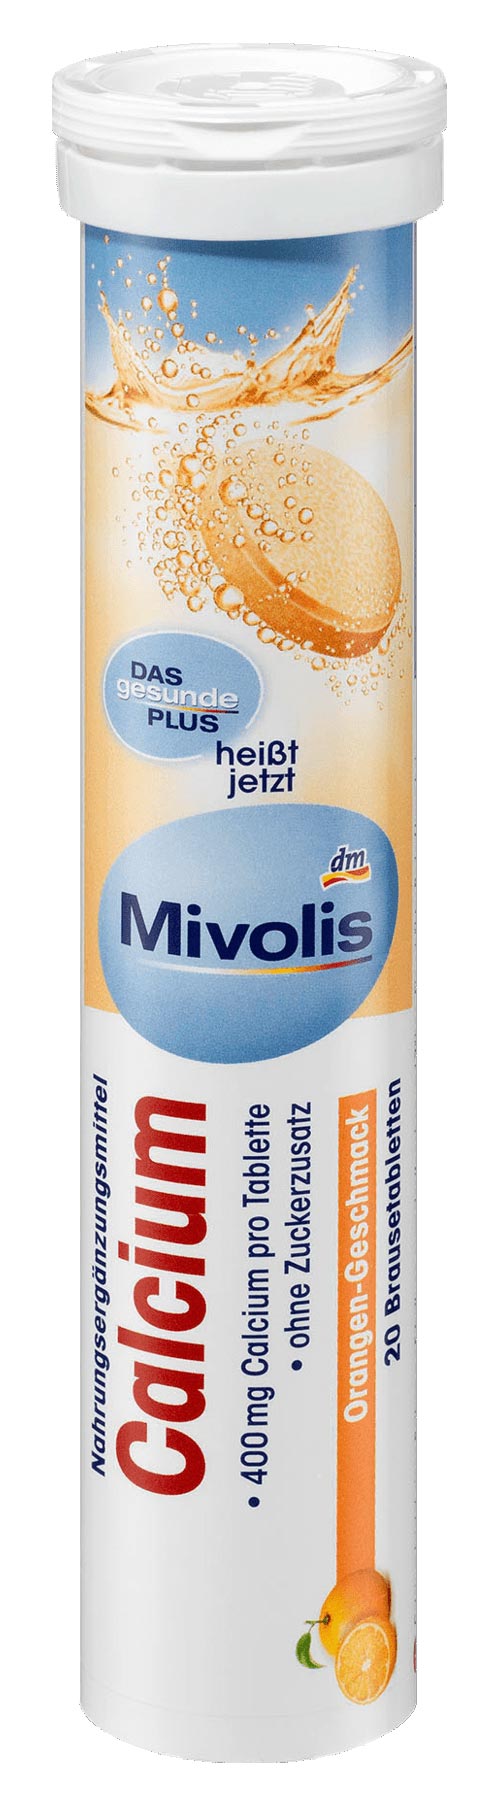 Dm Mivolis Fer + Vitamines C + B, Comprimés, Mivolis au Maroc